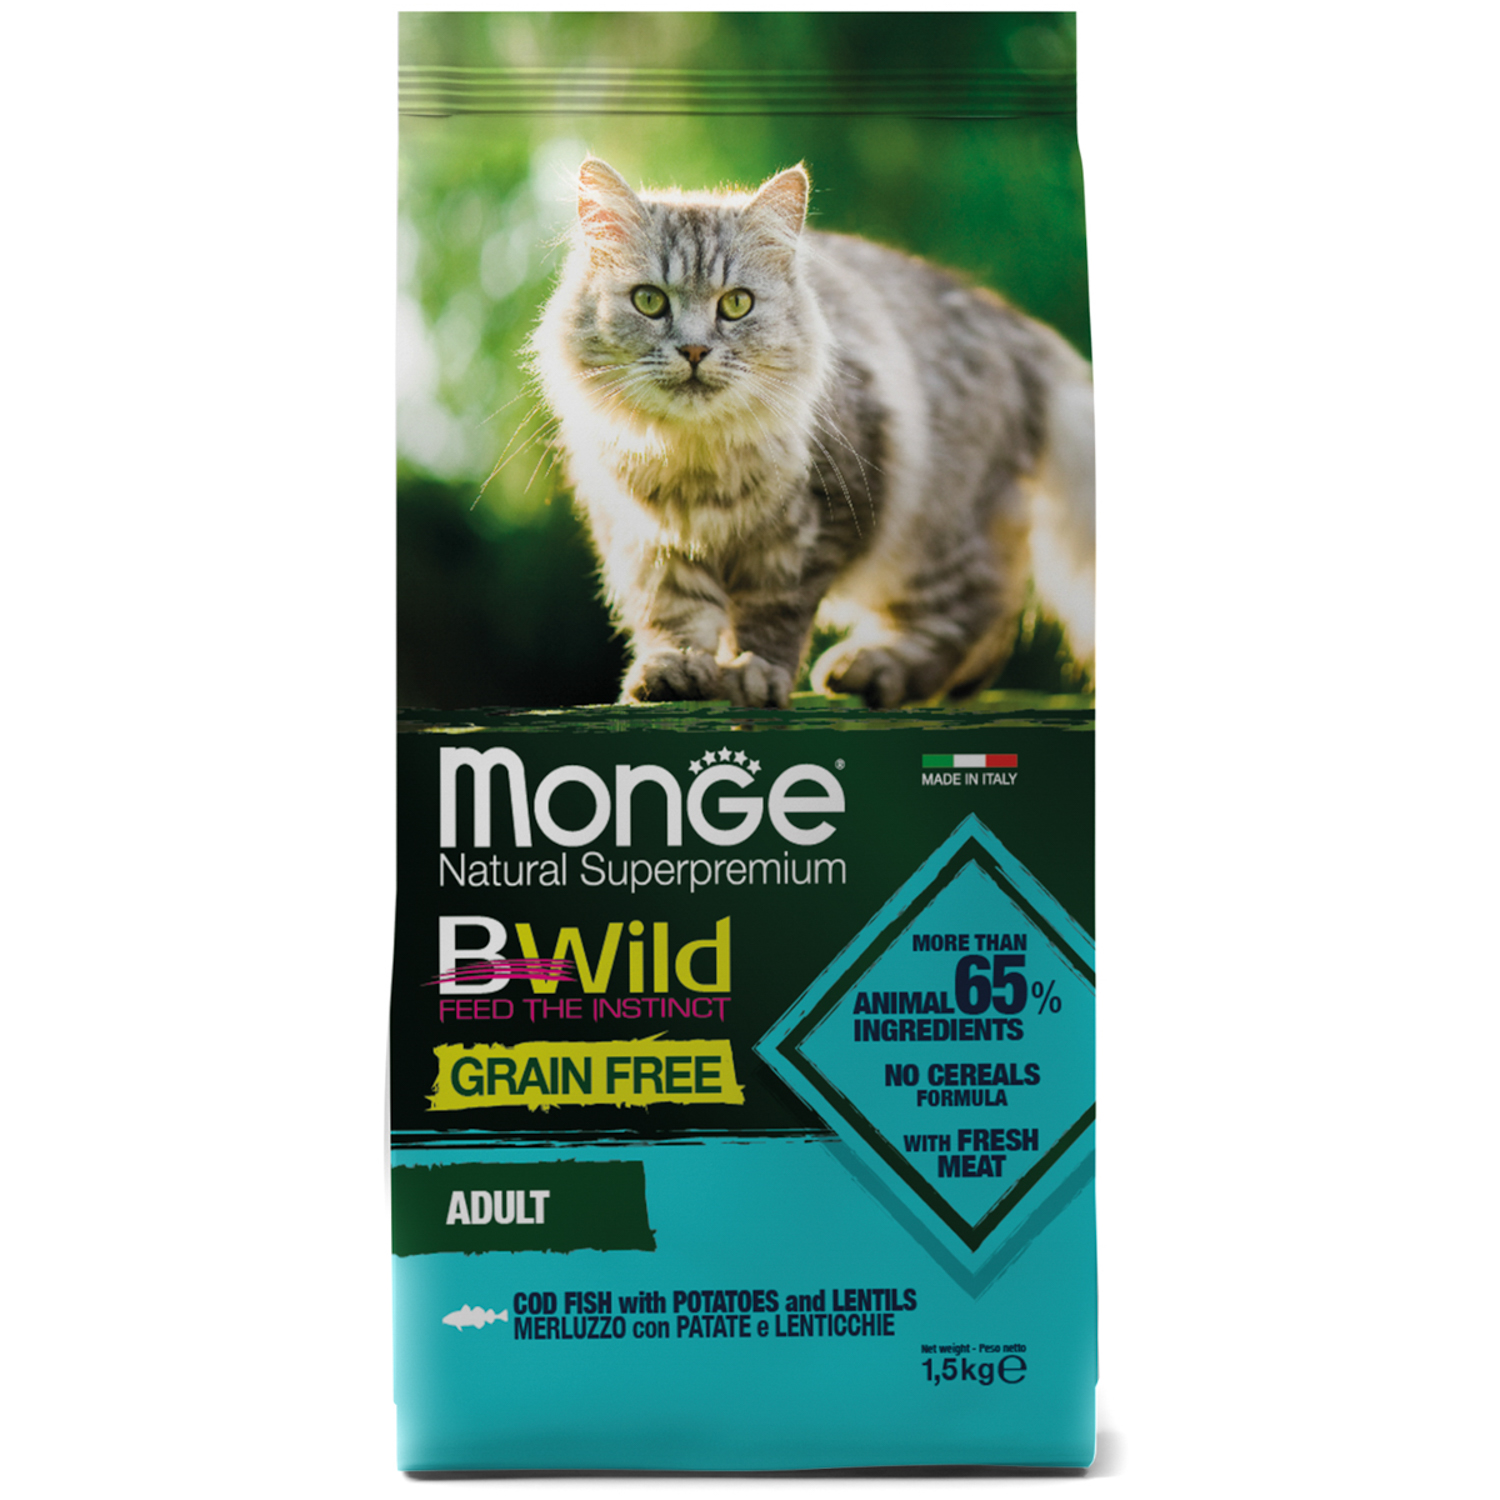 Сухой корм Monge Cat BWild GRAIN FREE для взрослых кошек, беззерновой, из трески 1,5 кг